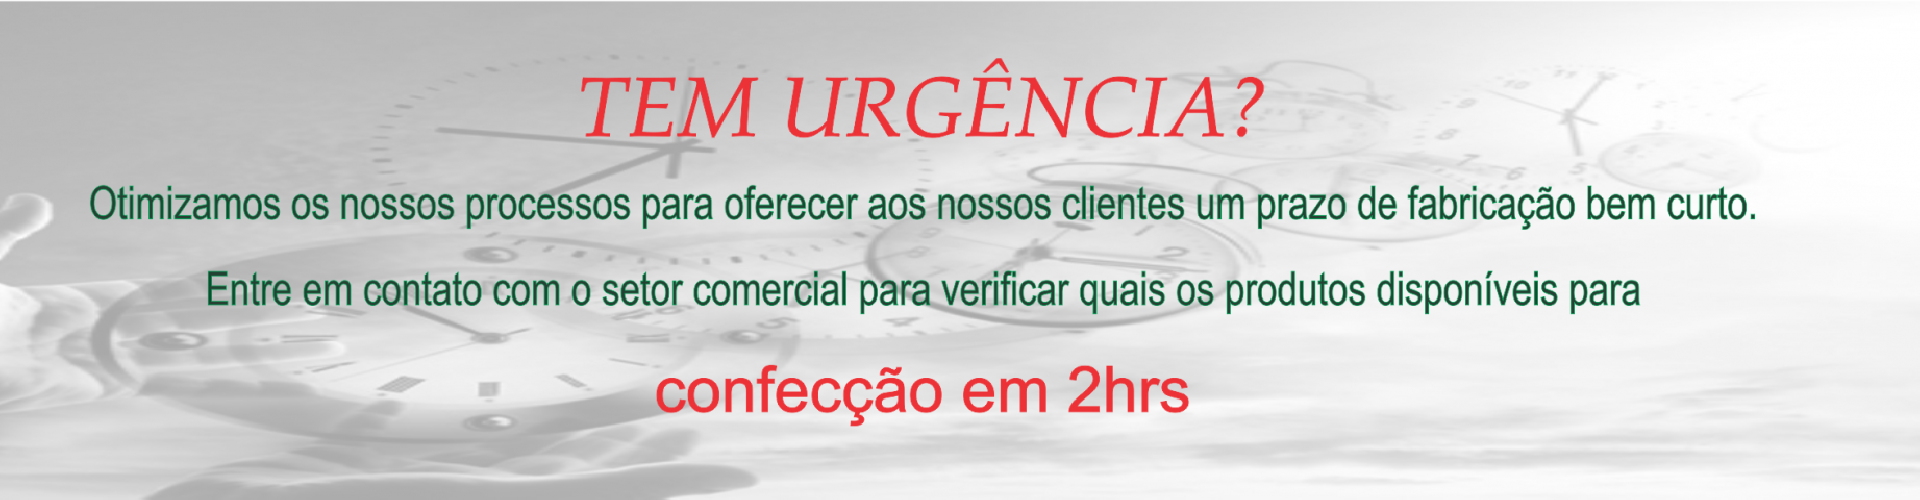 Urgencia - >